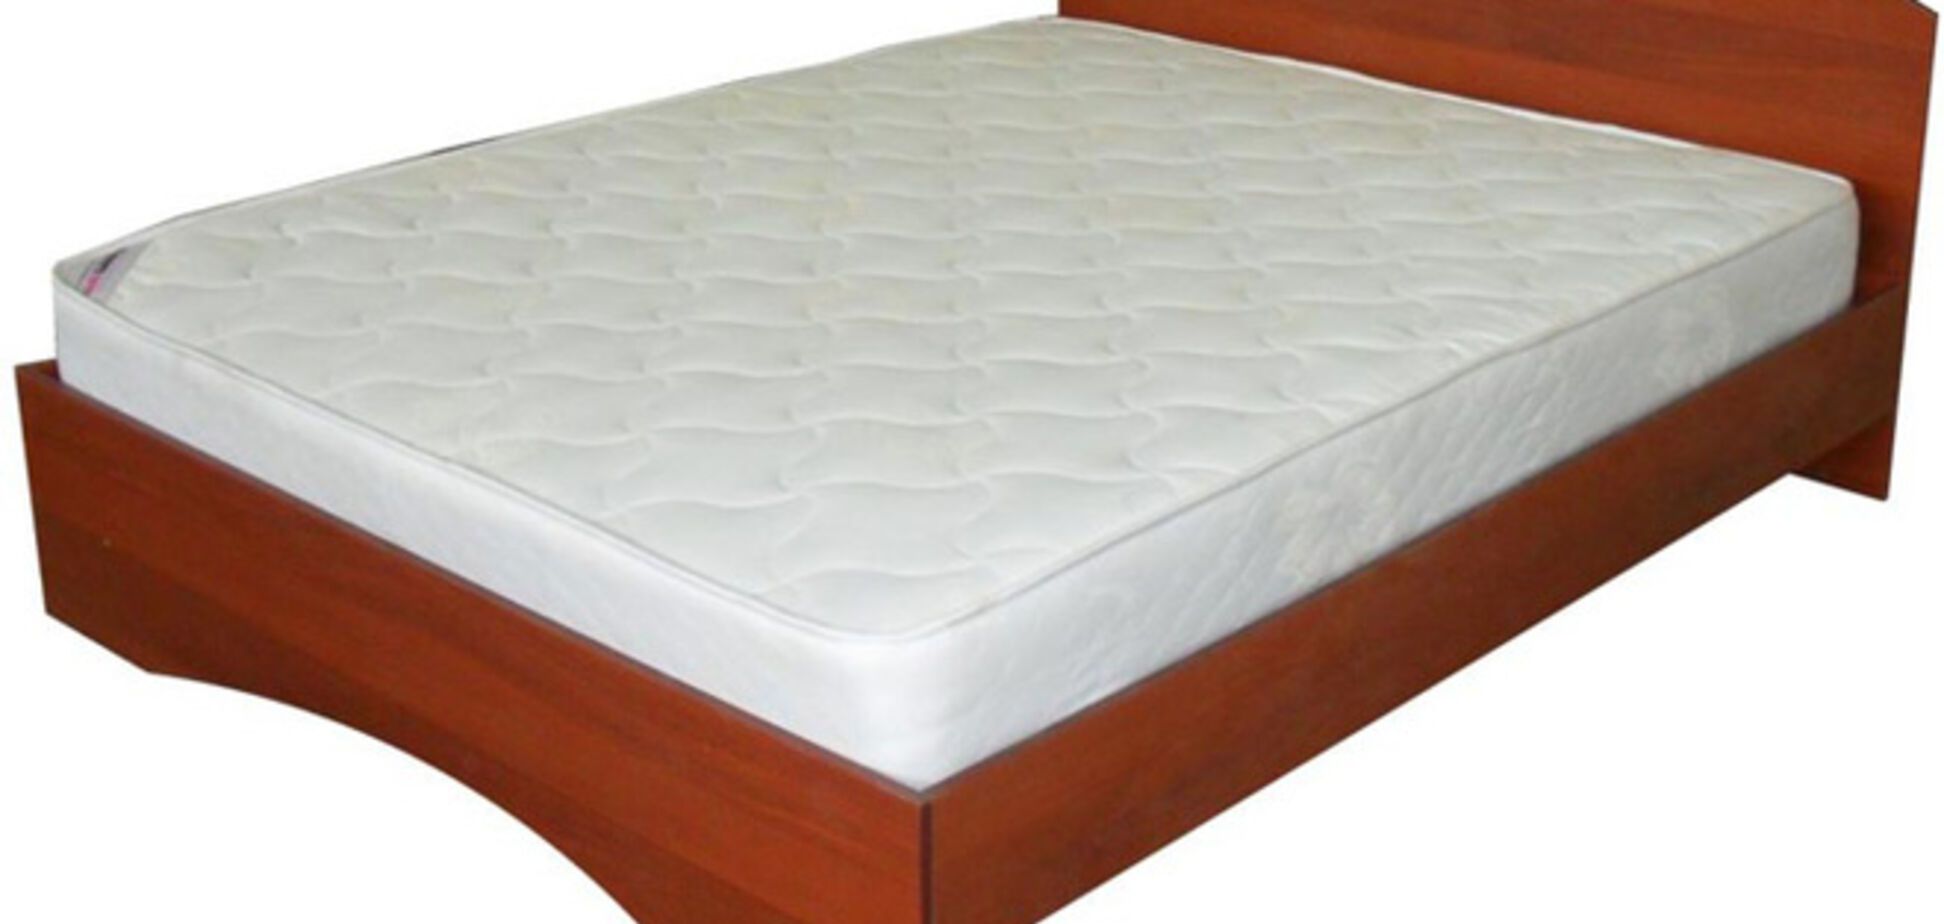 Купити недорогу ліжко можна тепер в Інтернеті